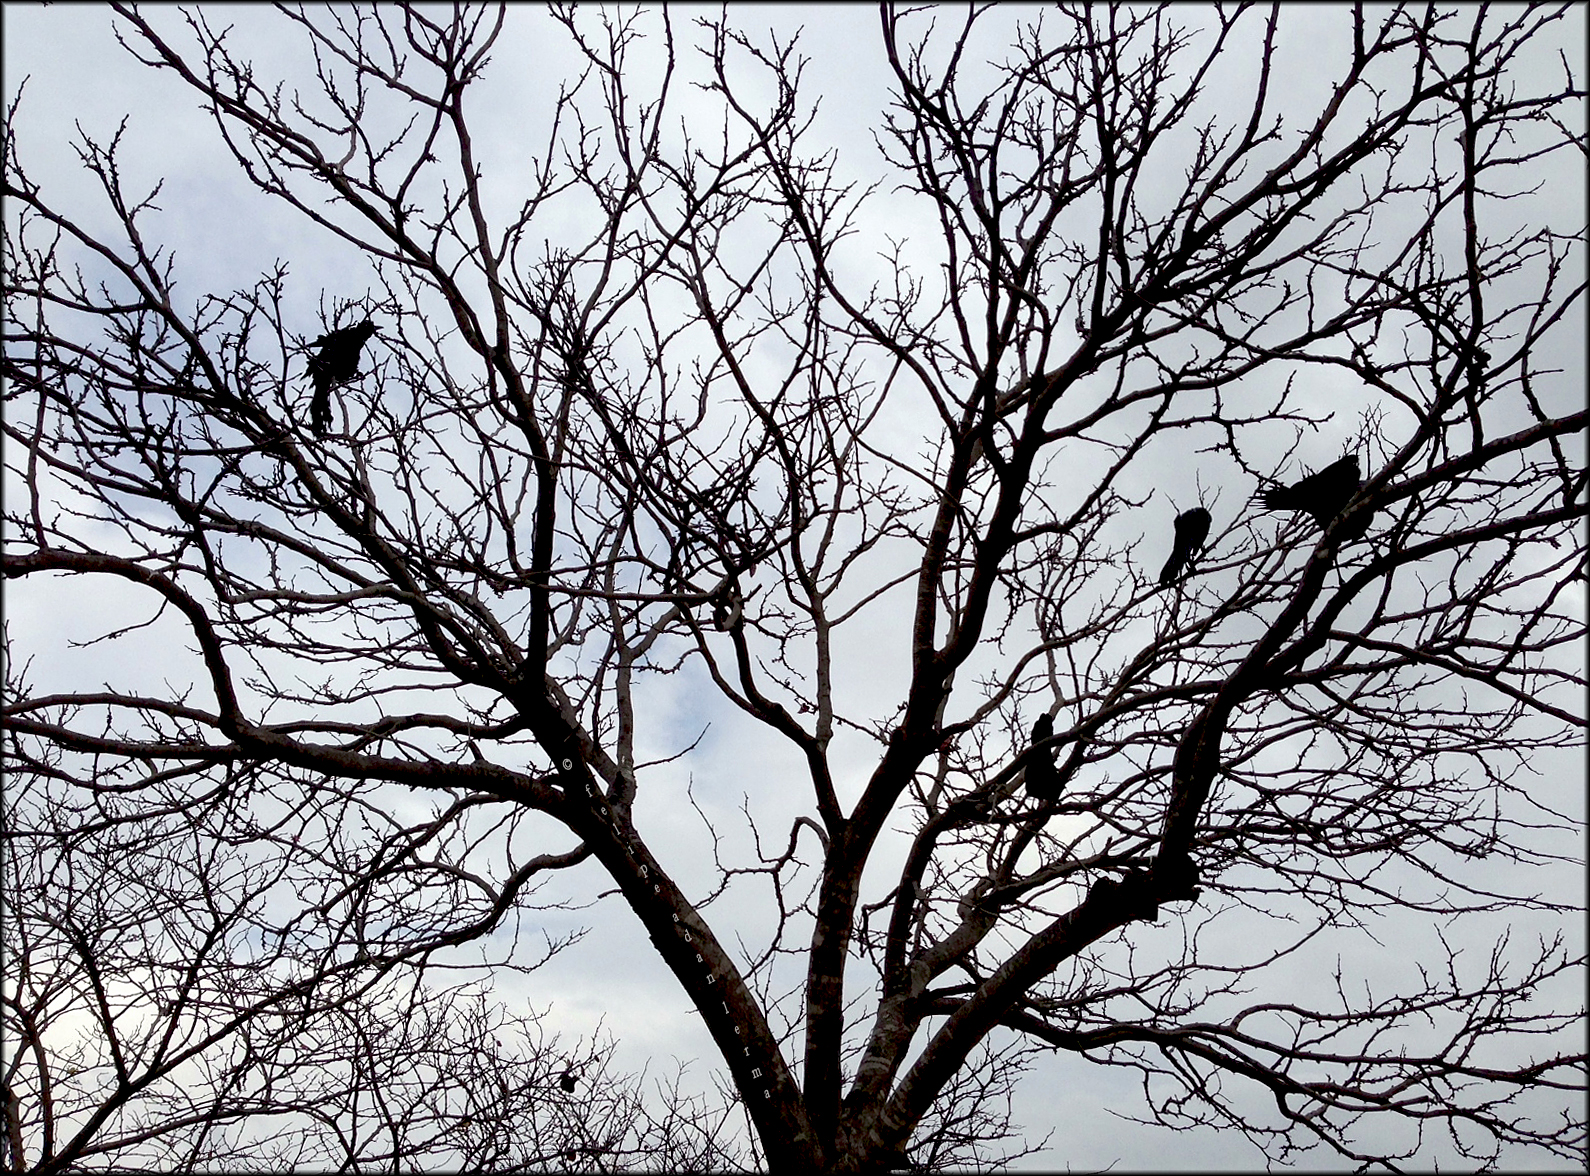 Birds in Winter Tree Photography © Felipe Adan Lerma